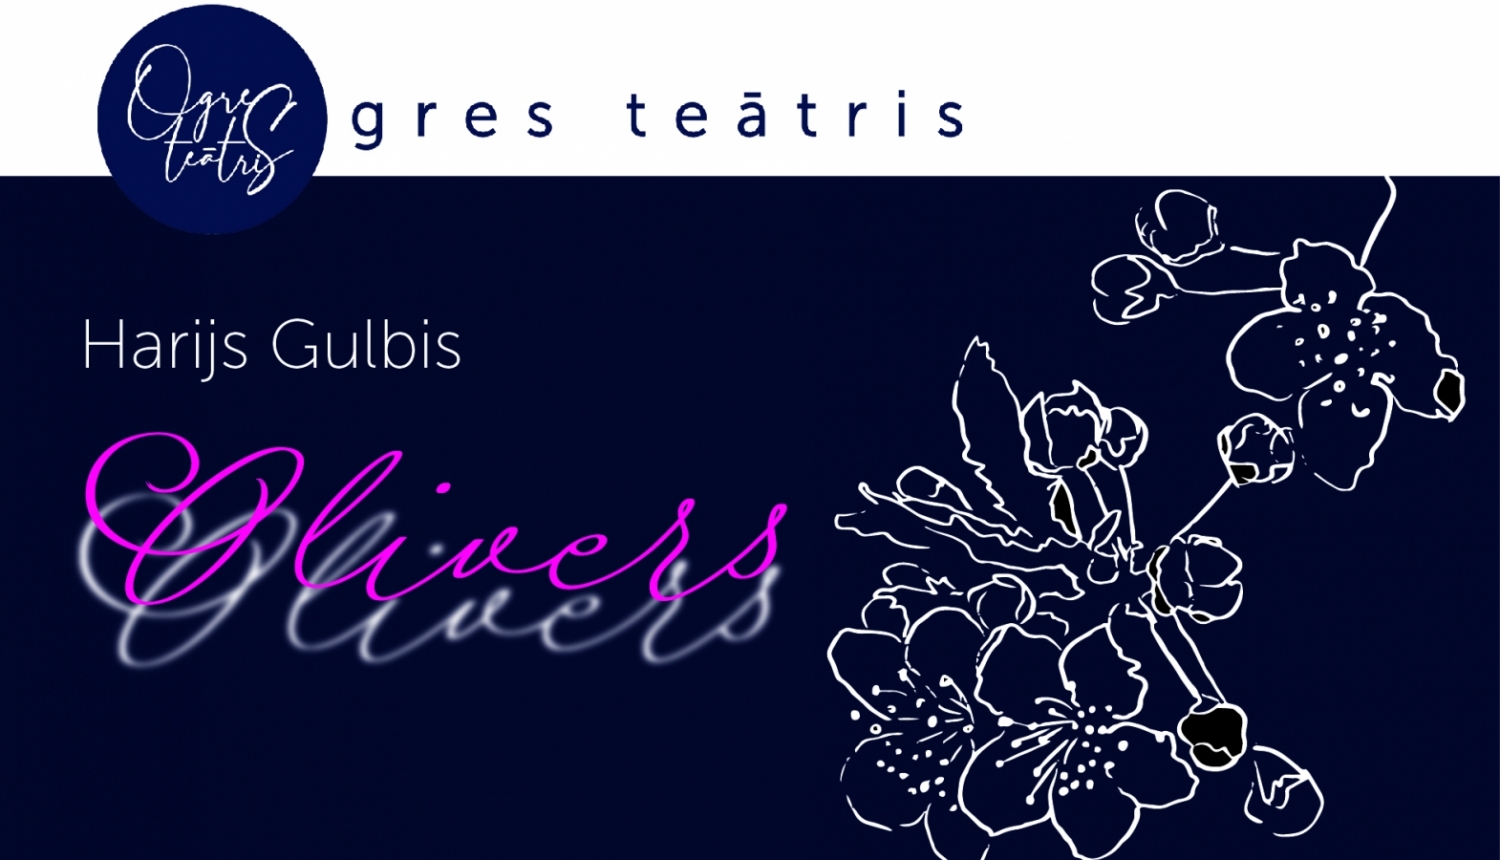 olivers_ogres-teatris_